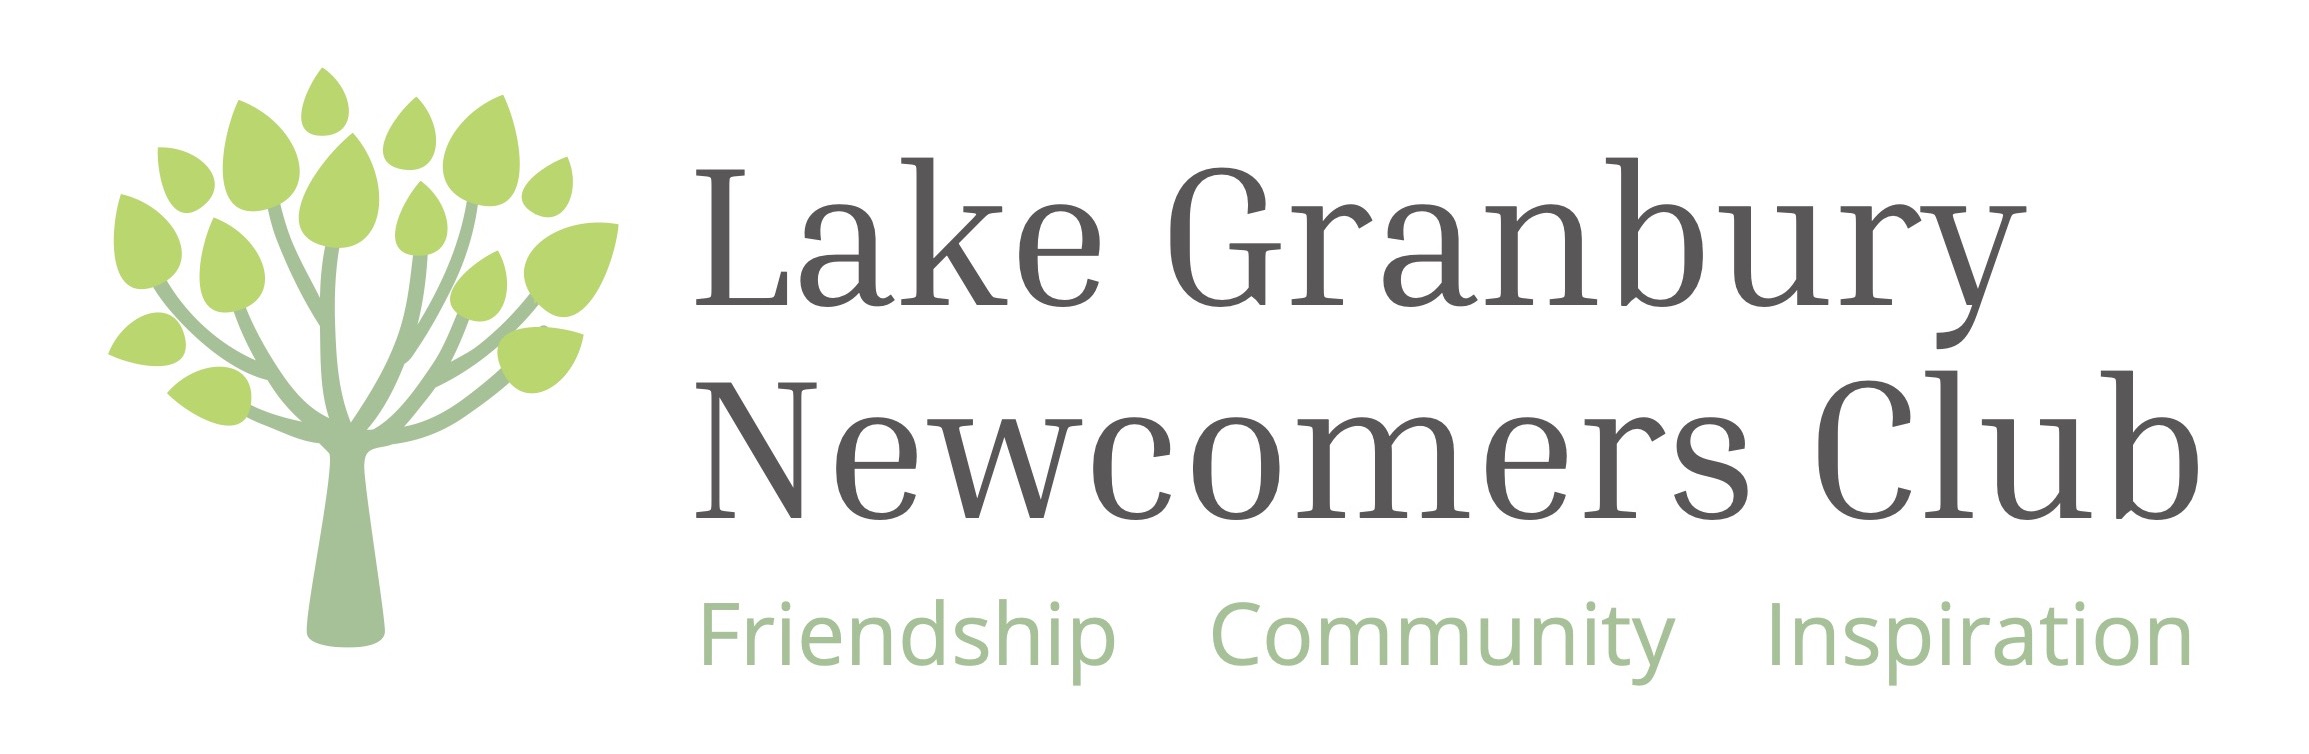 Lake Granbury Newcomers Club